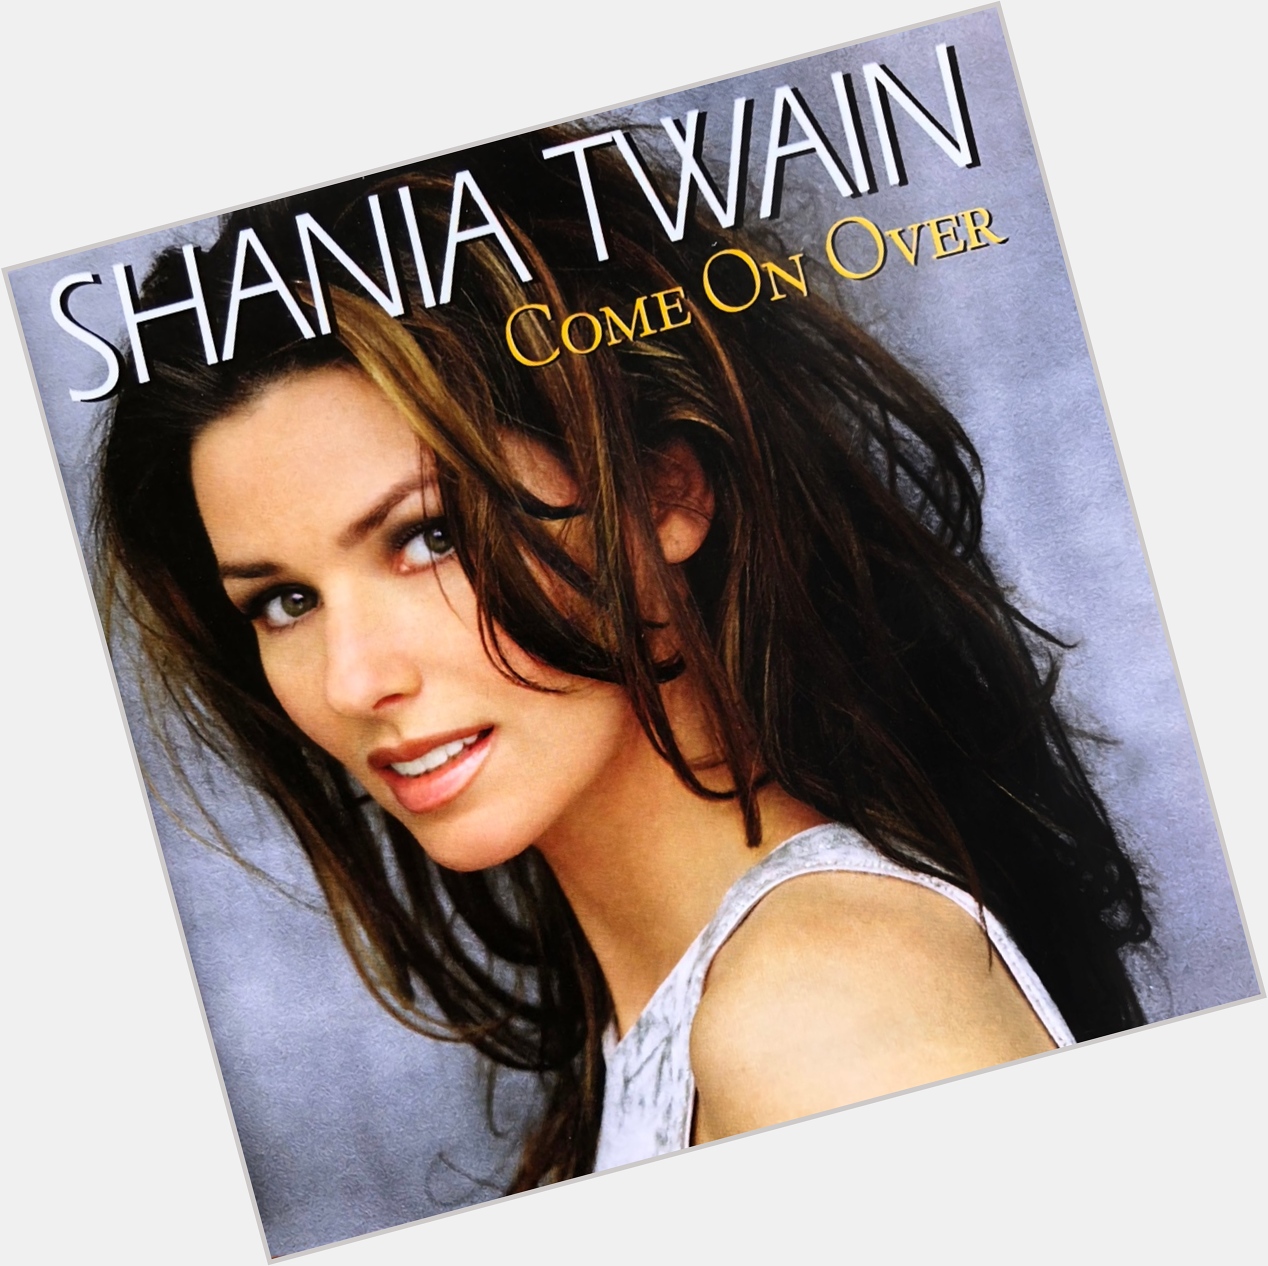 A happy 56th birthday to Shania Twain. 